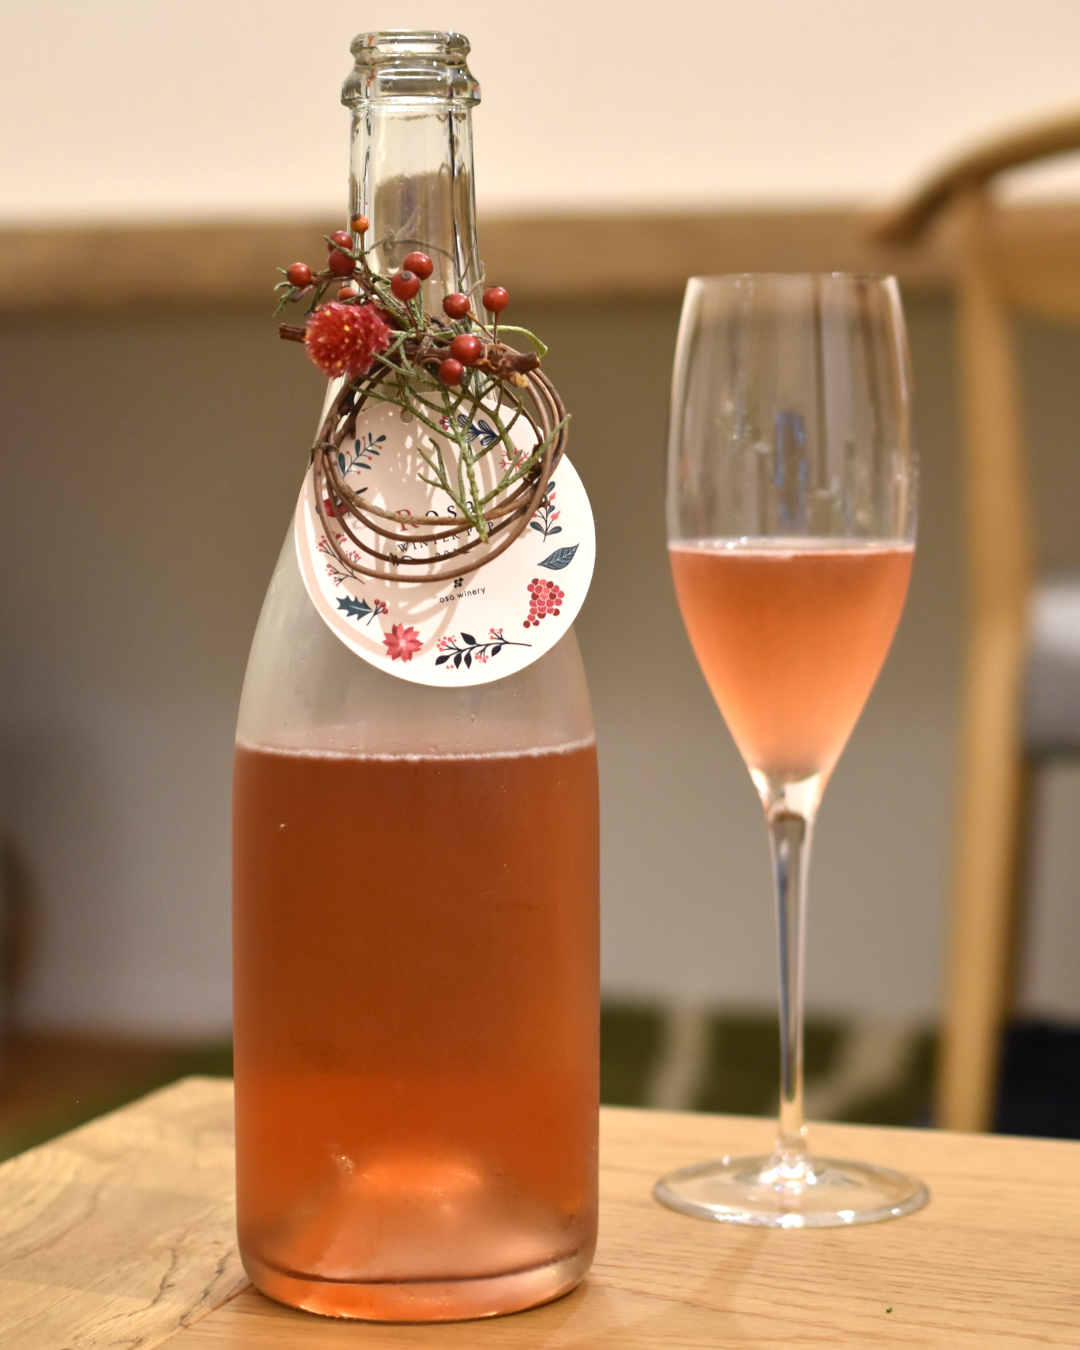 Rosa WINTER POP 2018 / ローザ ウィンター ポップ 2018-わくわくするワイン、ときどきお酒